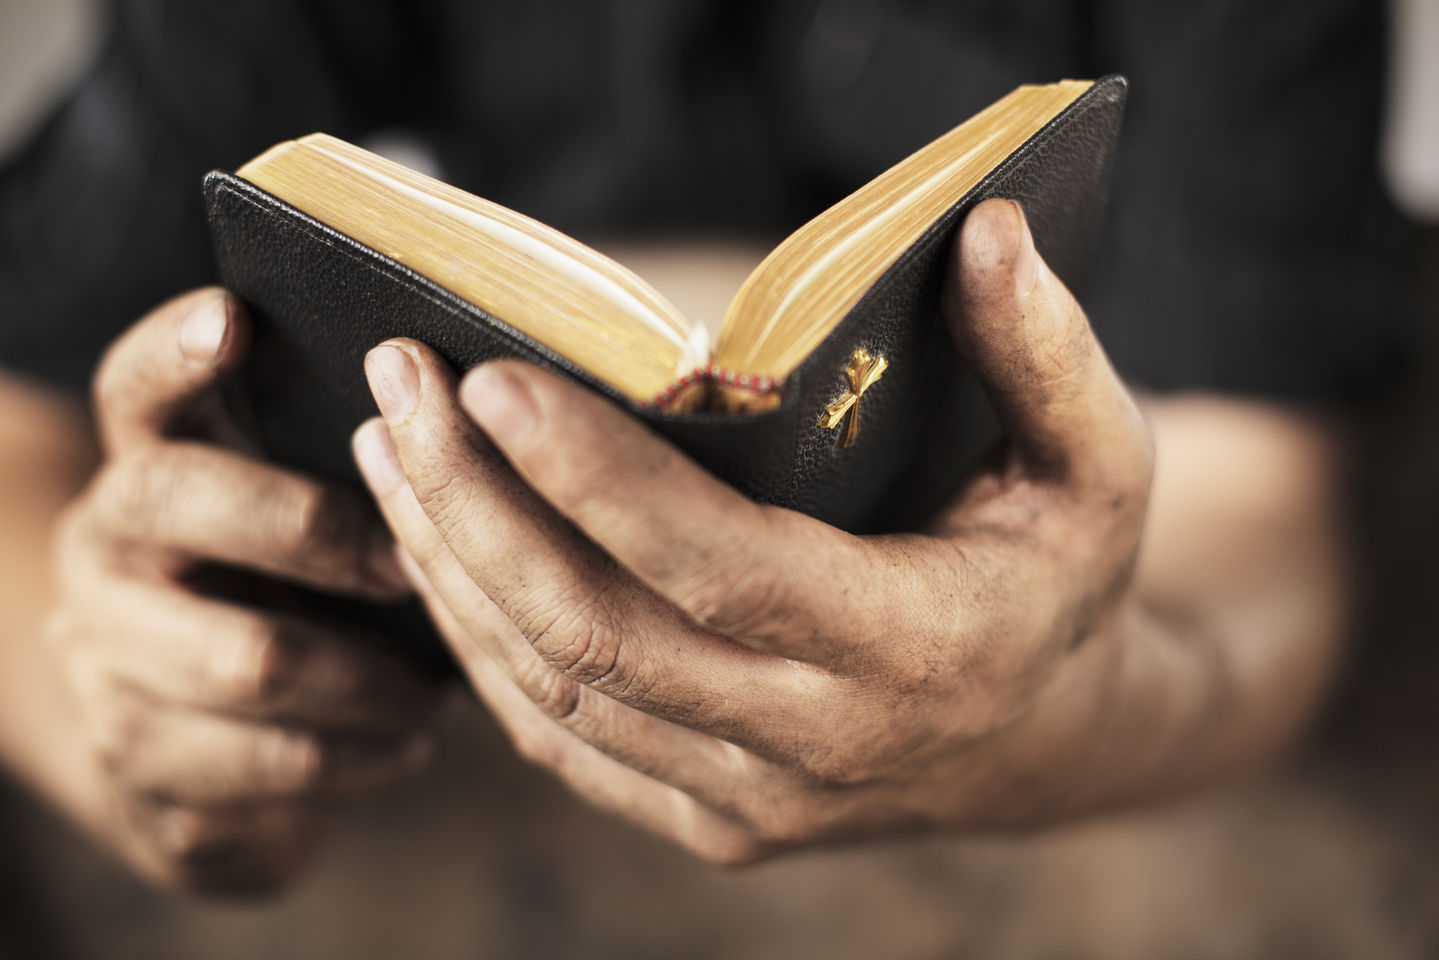 Читаете ли вы Библию в достаточной мере?